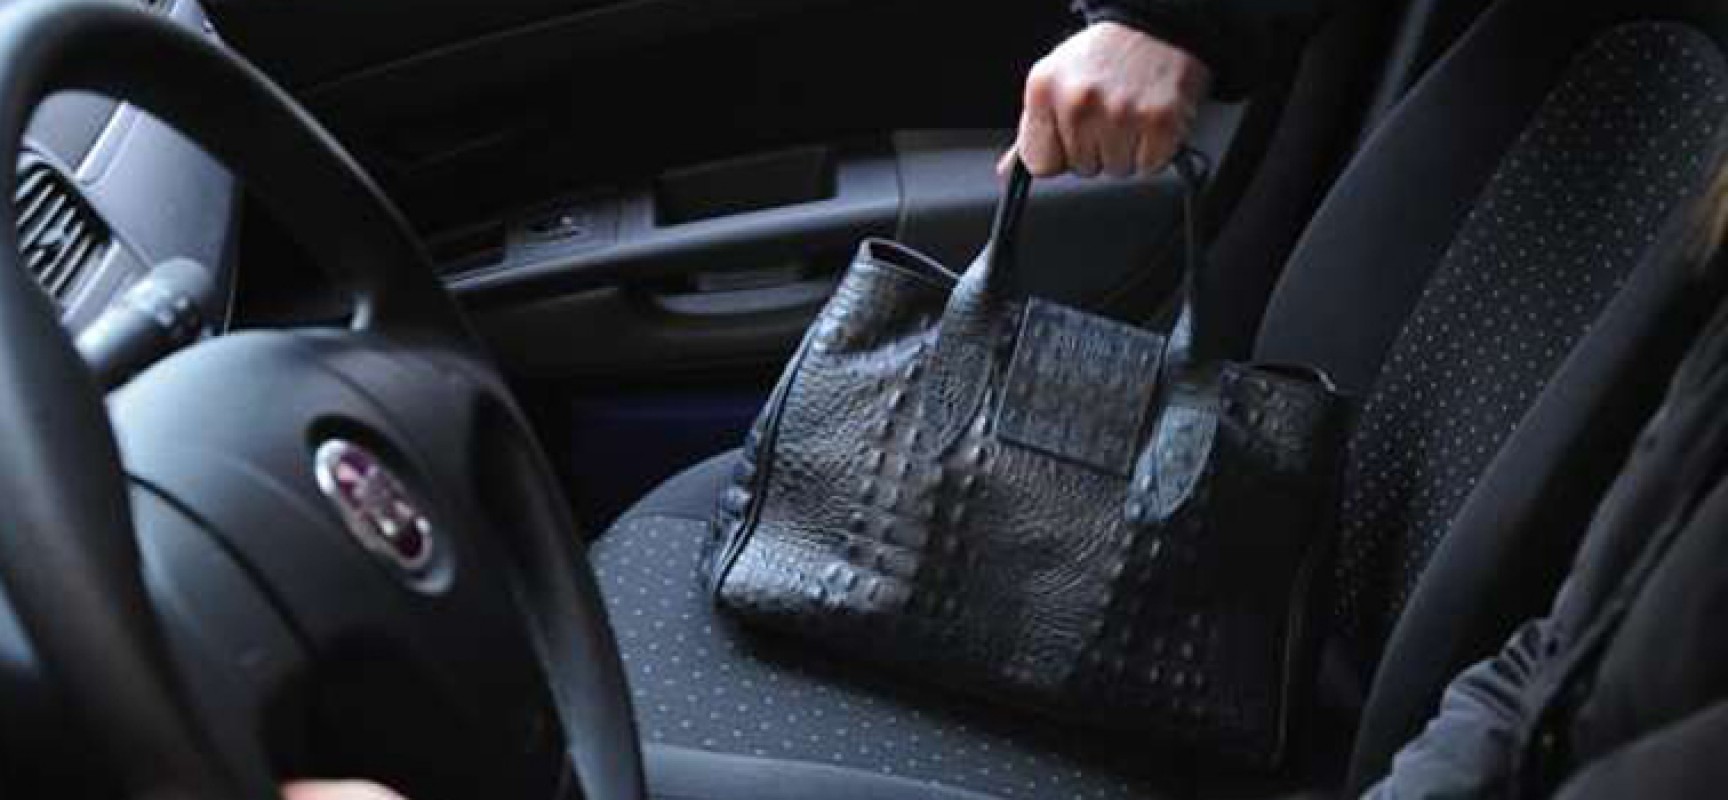 Ancora furto di una borsa da un’auto ferma: vittima una donna